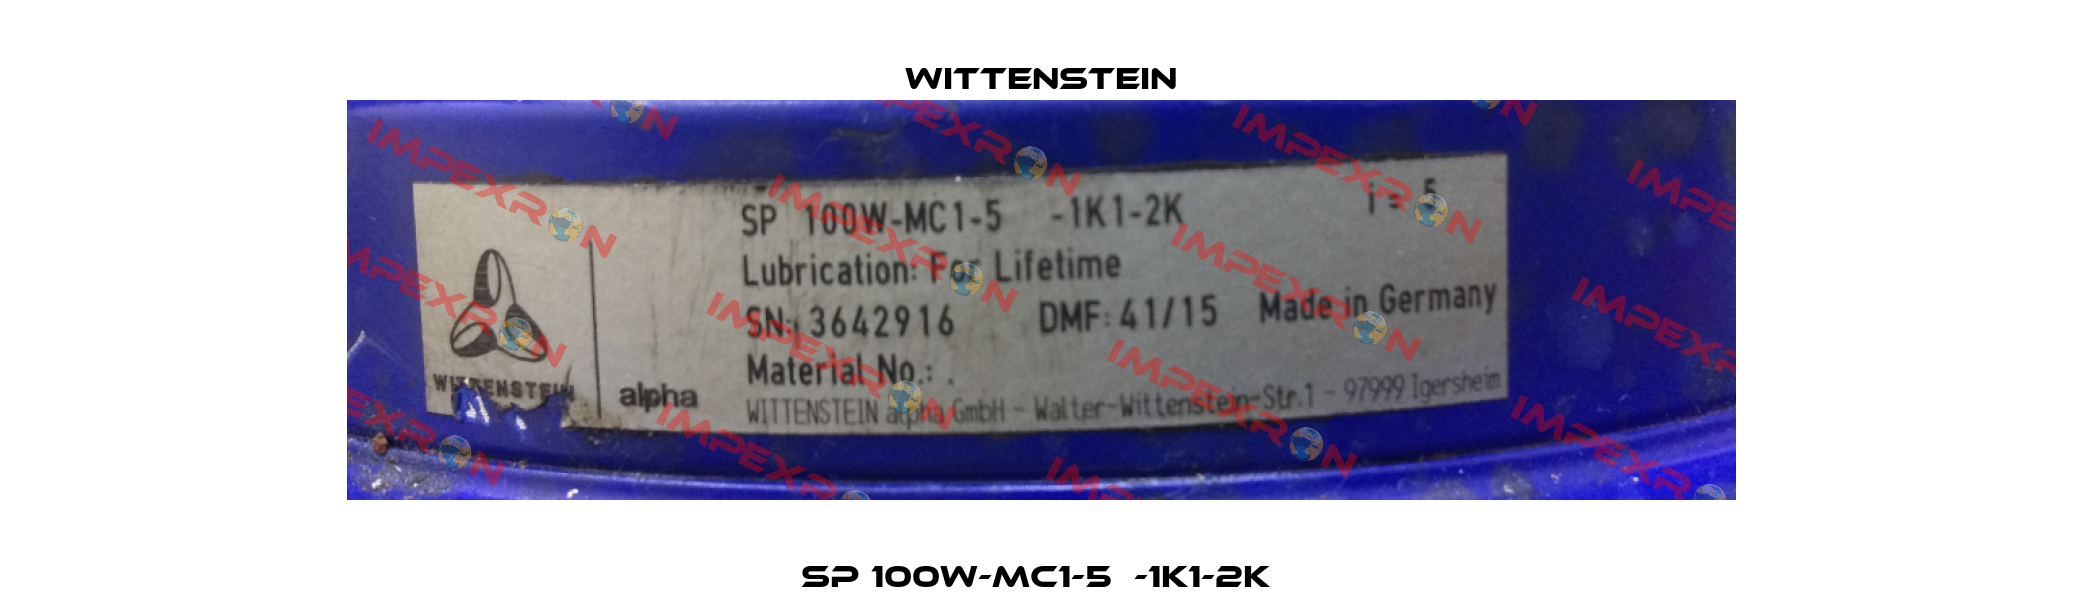 SP 100W-MC1-5  -1K1-2K  Wittenstein